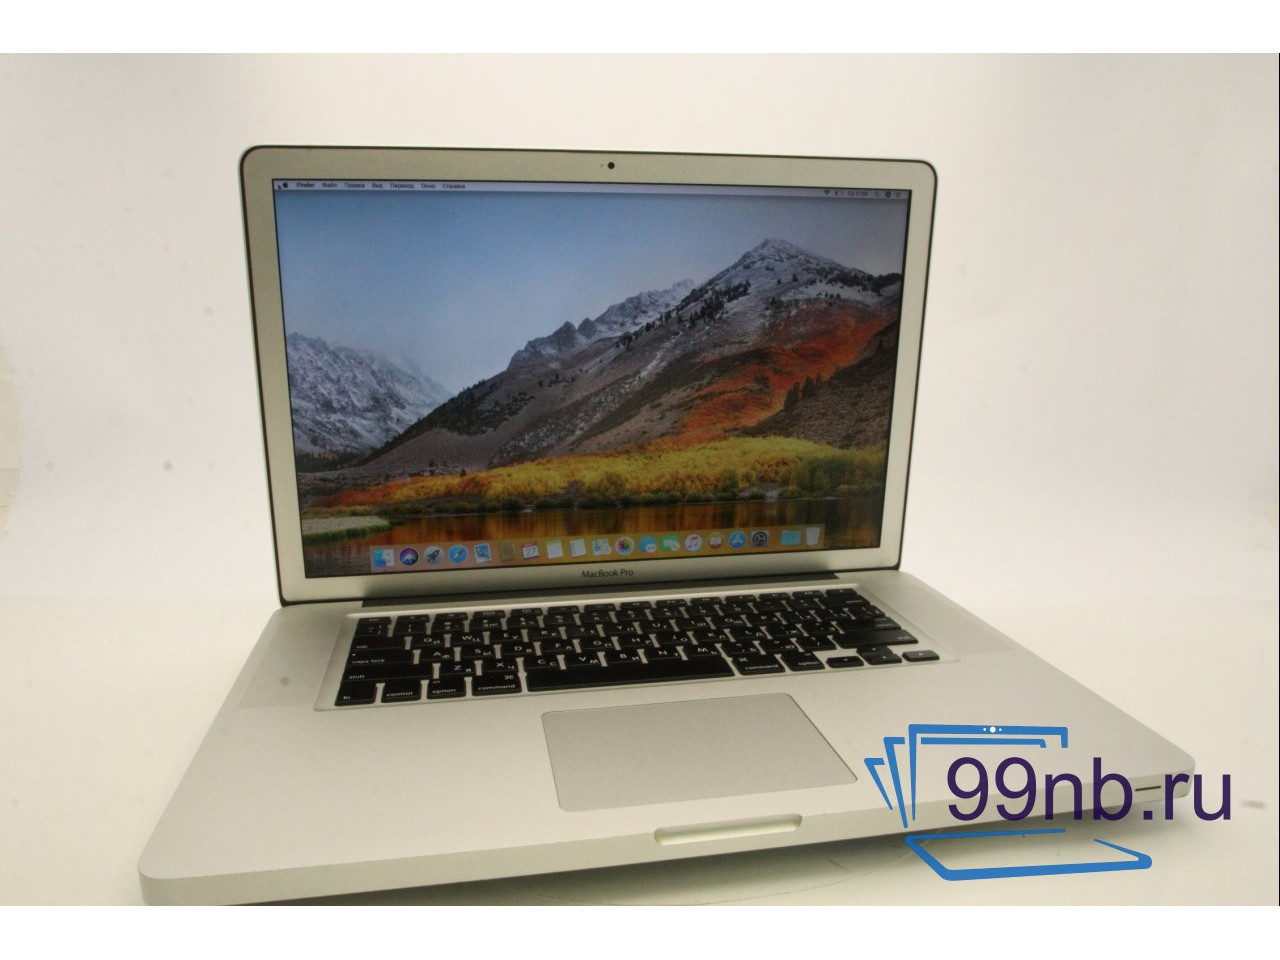 Macbook a1286 pro